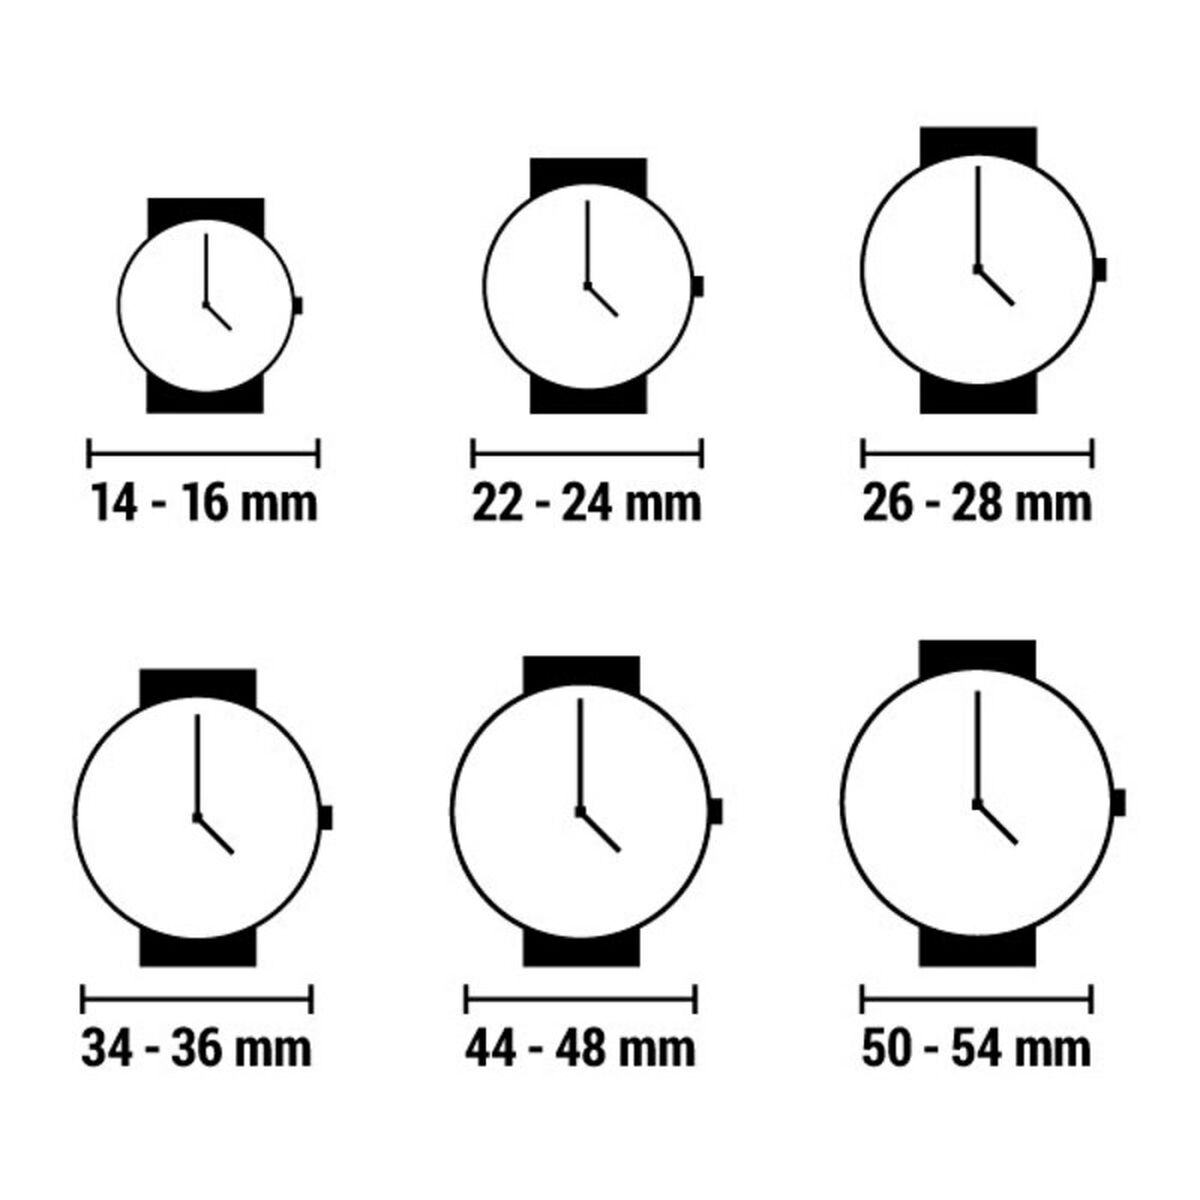 Reloj Hombre Maserati R8871639003